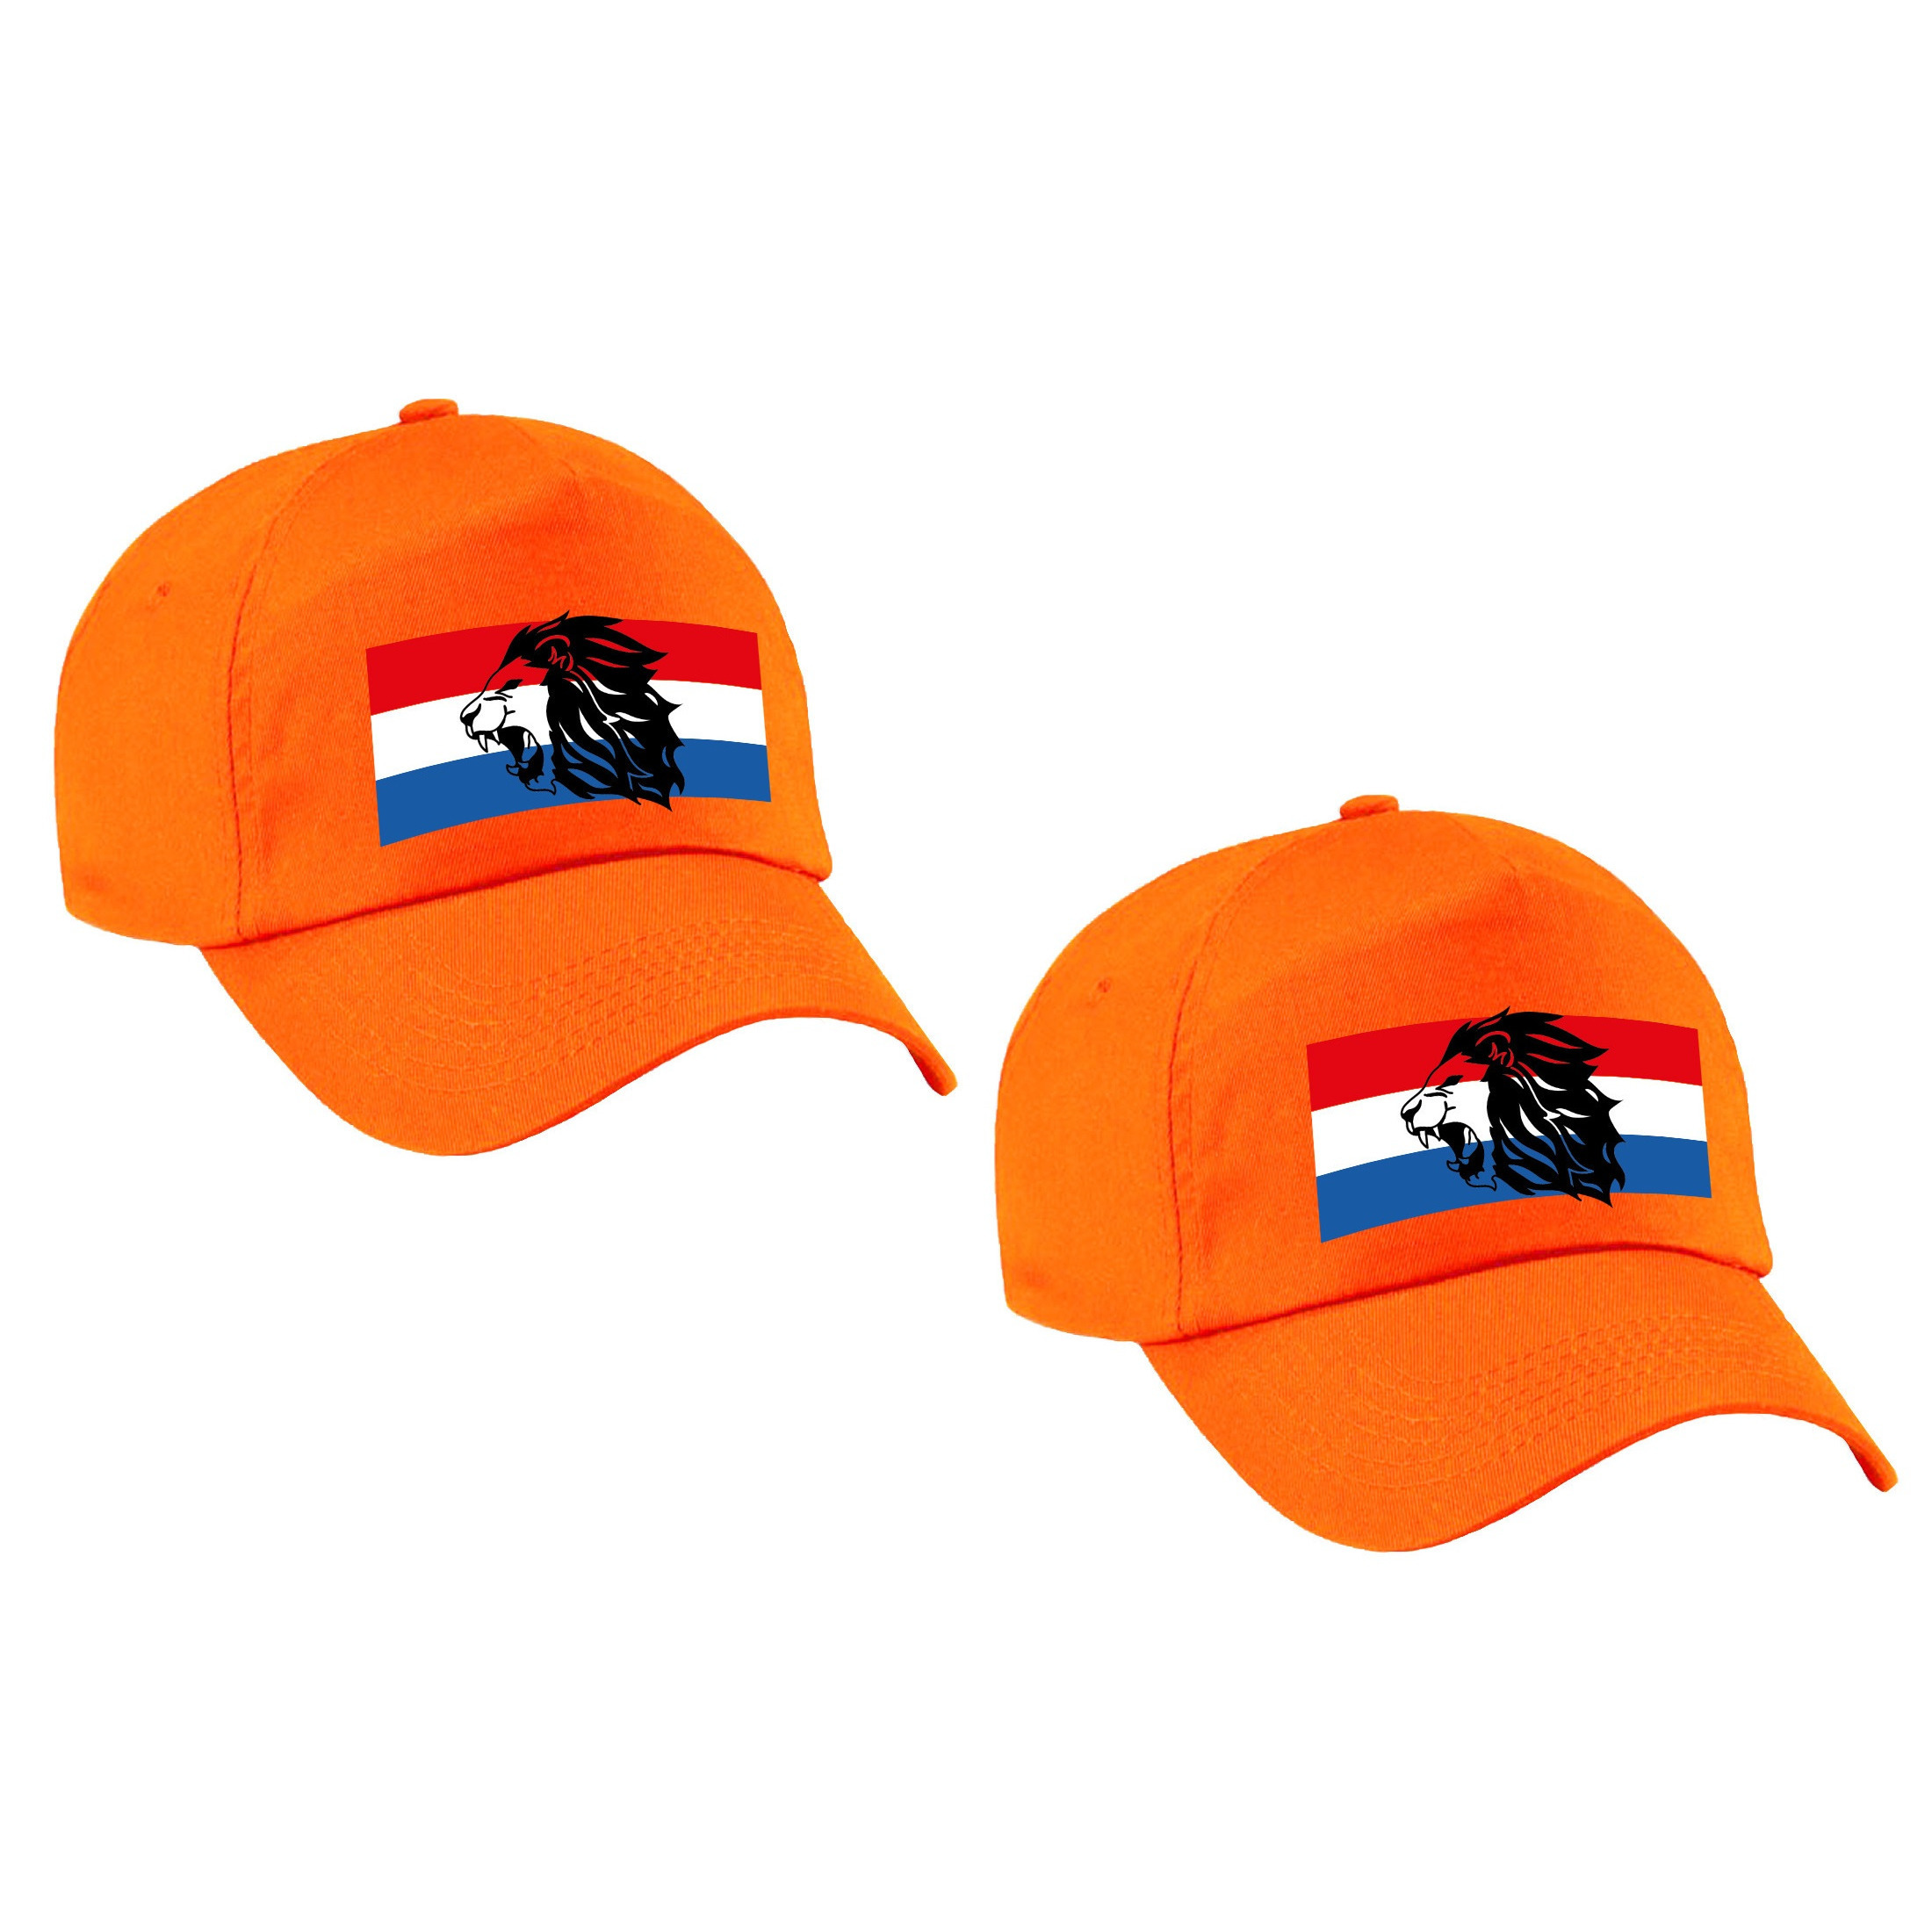 2x stuks Holland supporter pet - cap met de oranje leeuw en Nederlandse vlag - Ek - Wk voor kinderen